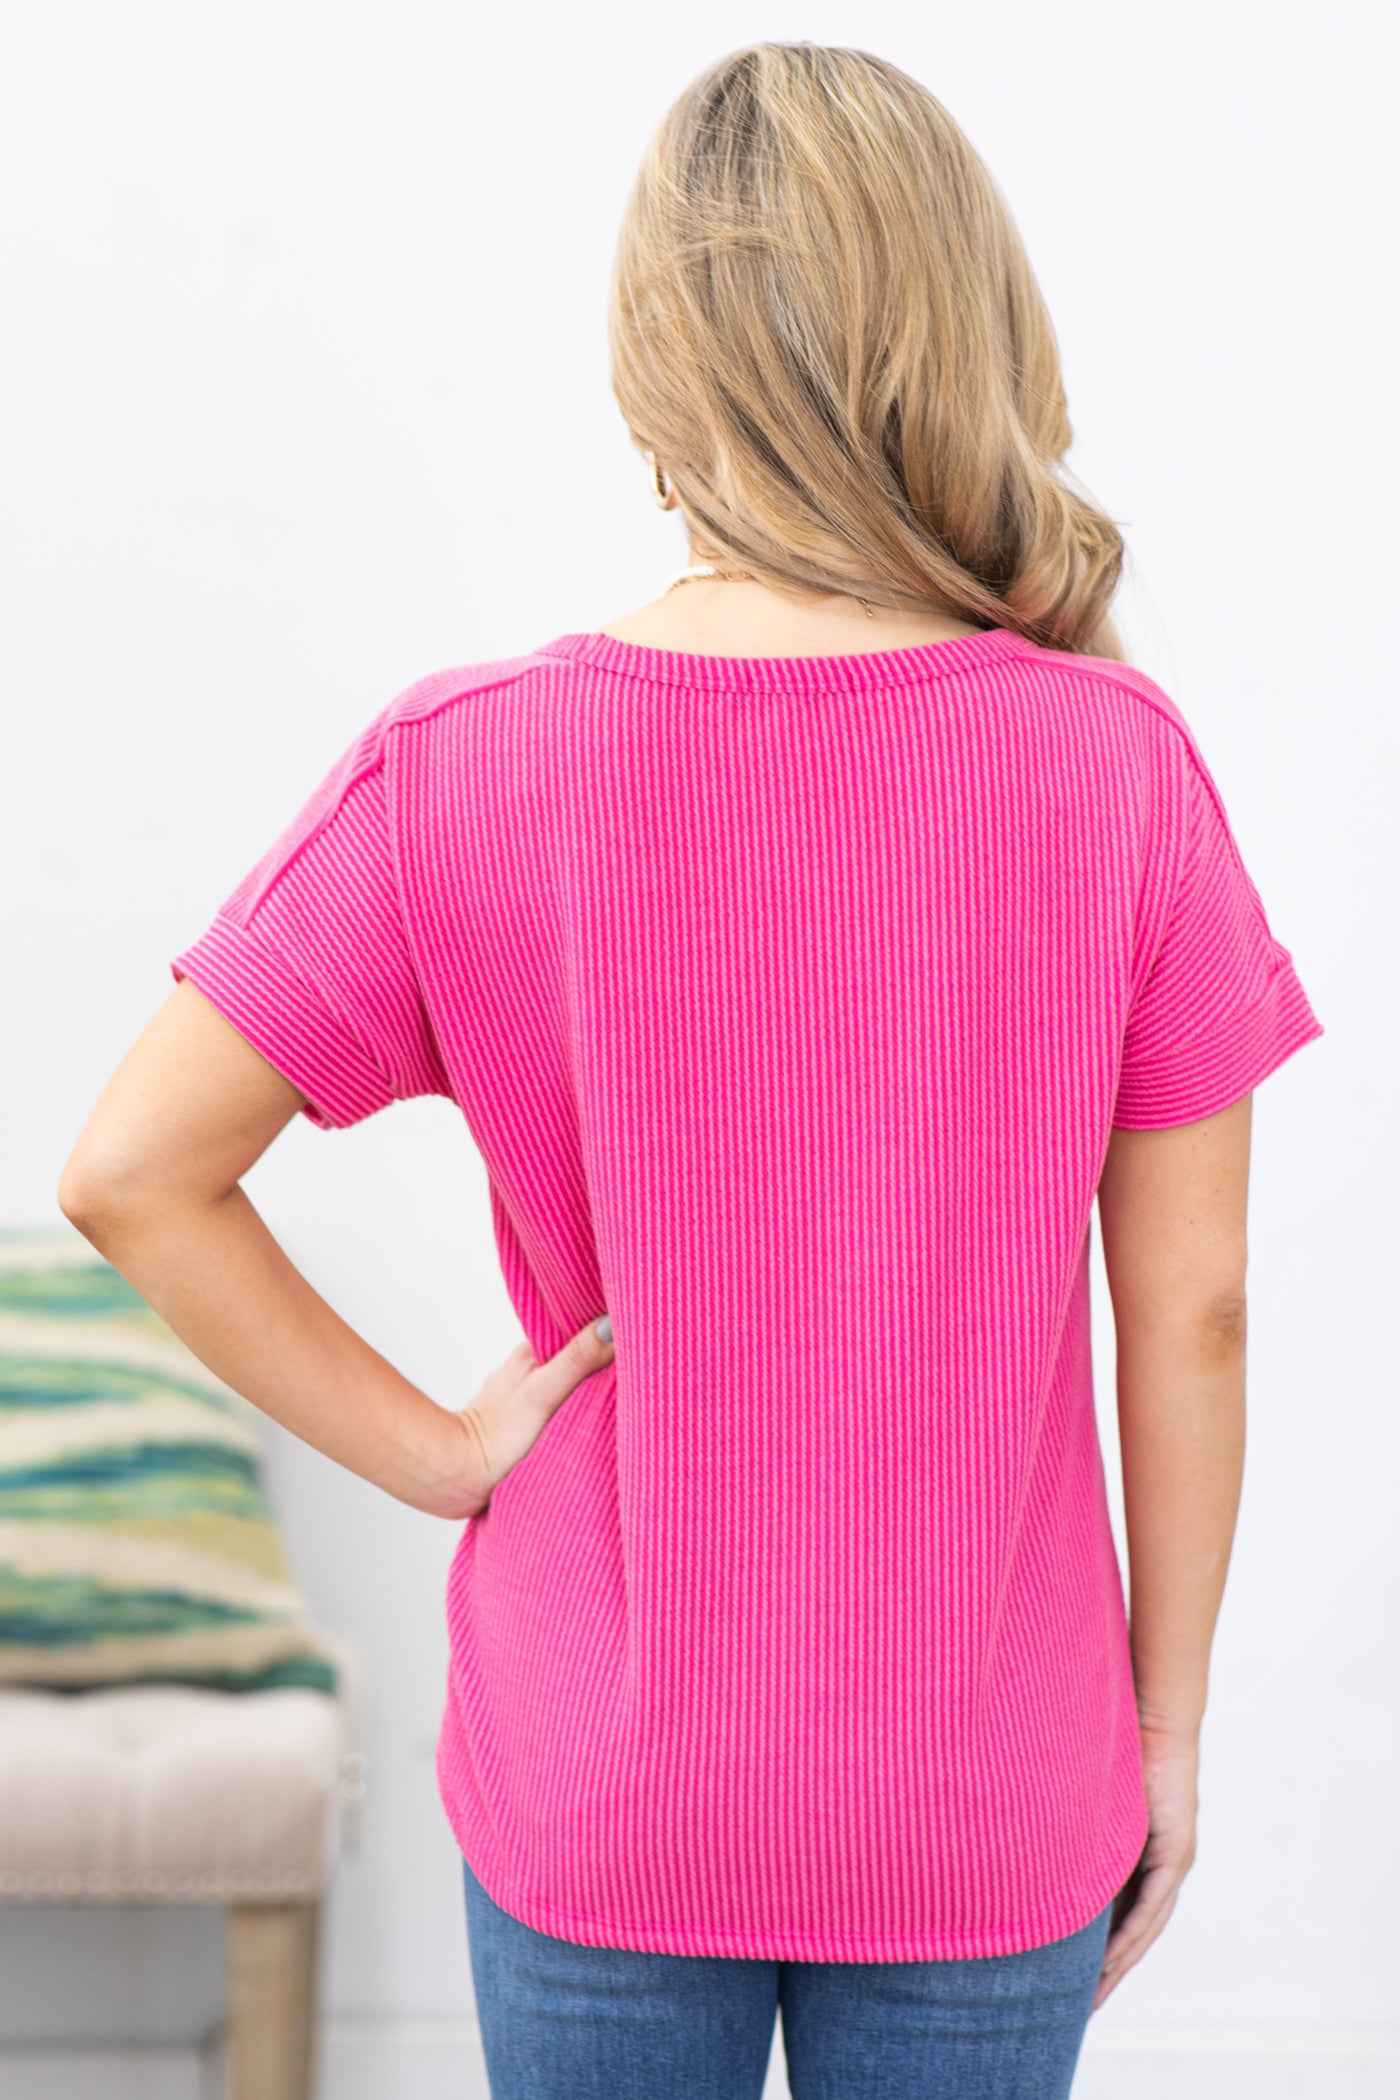 Hot Pink Ribbed Short Sleeve Knit Top